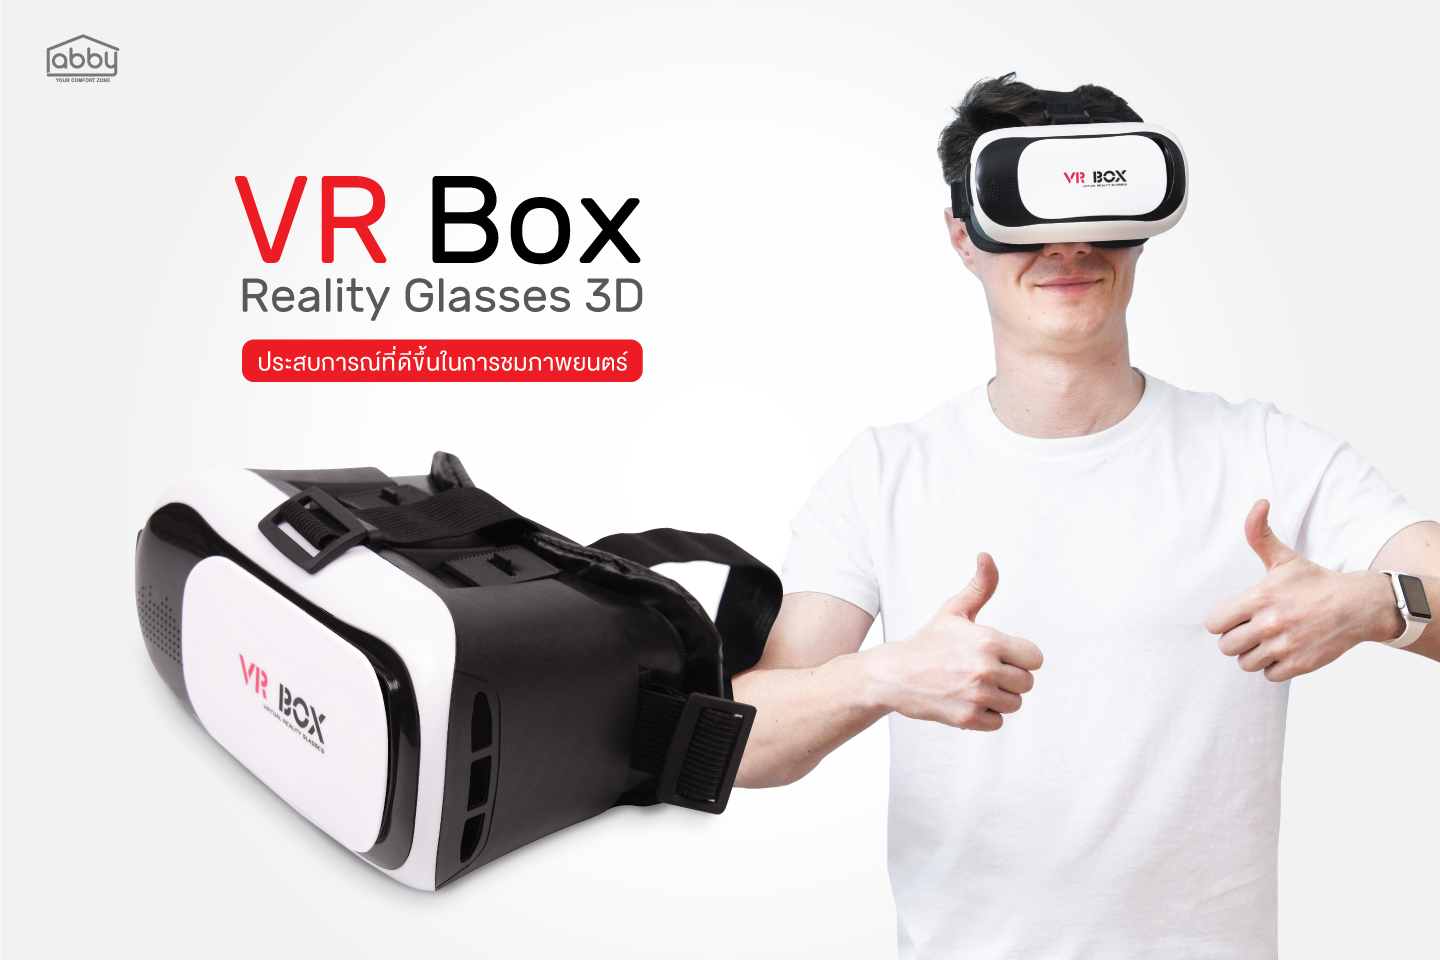 VR Box Model Vrbox 01